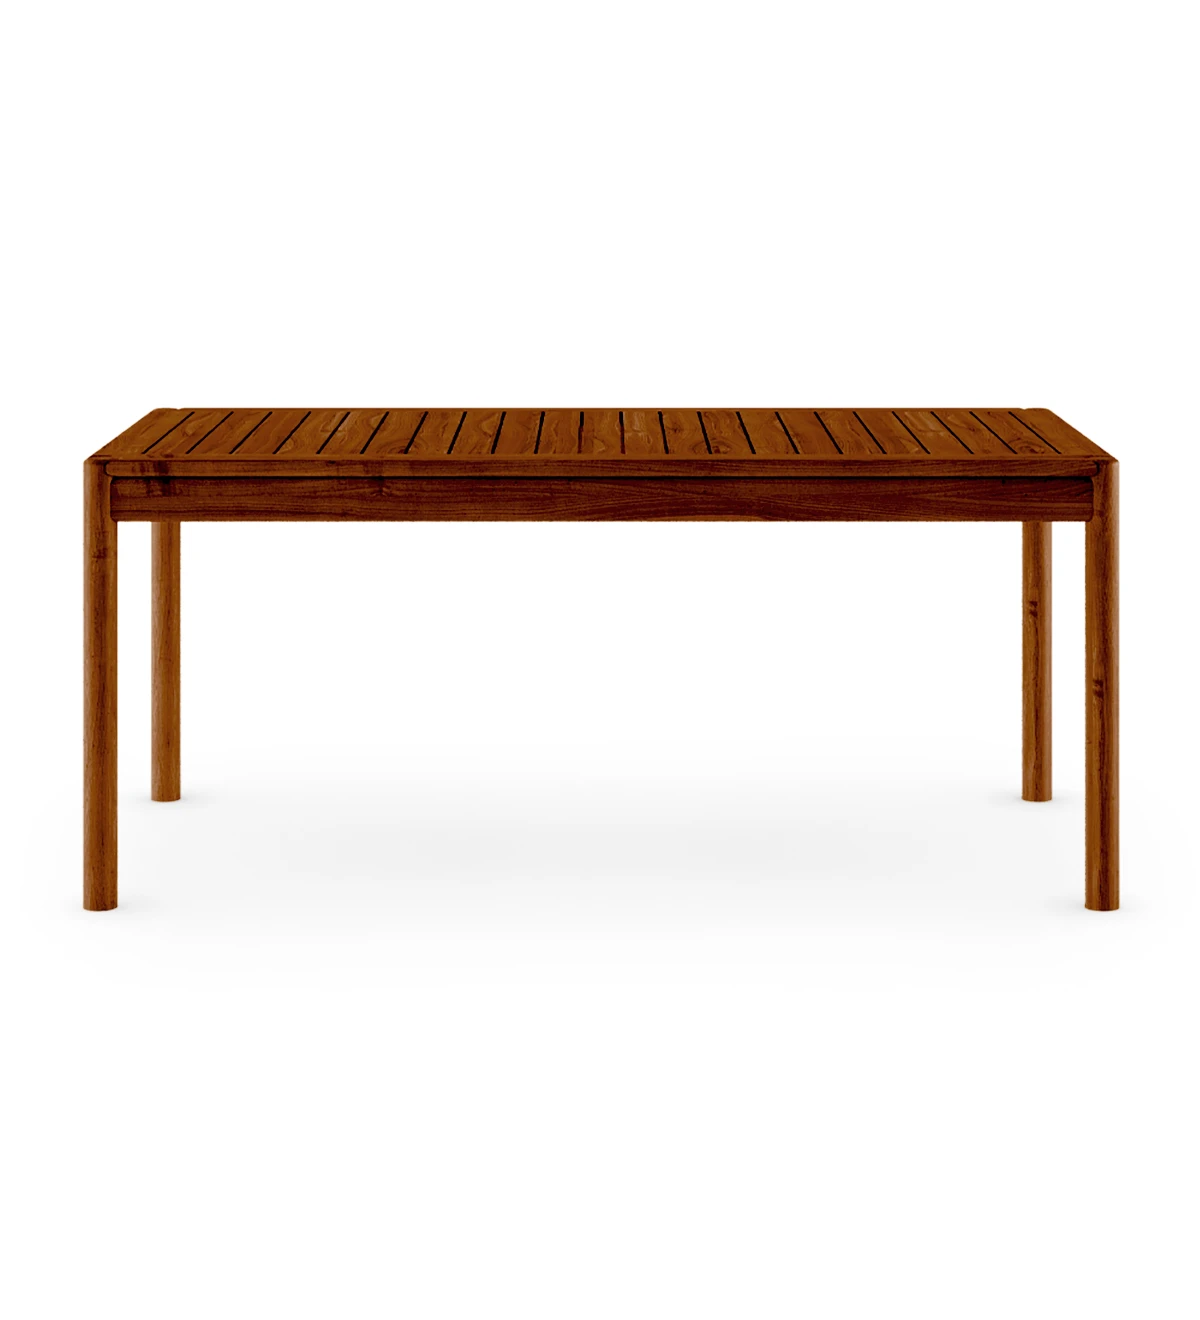 Table à manger rectangulaire en bois naturel couleur miel.